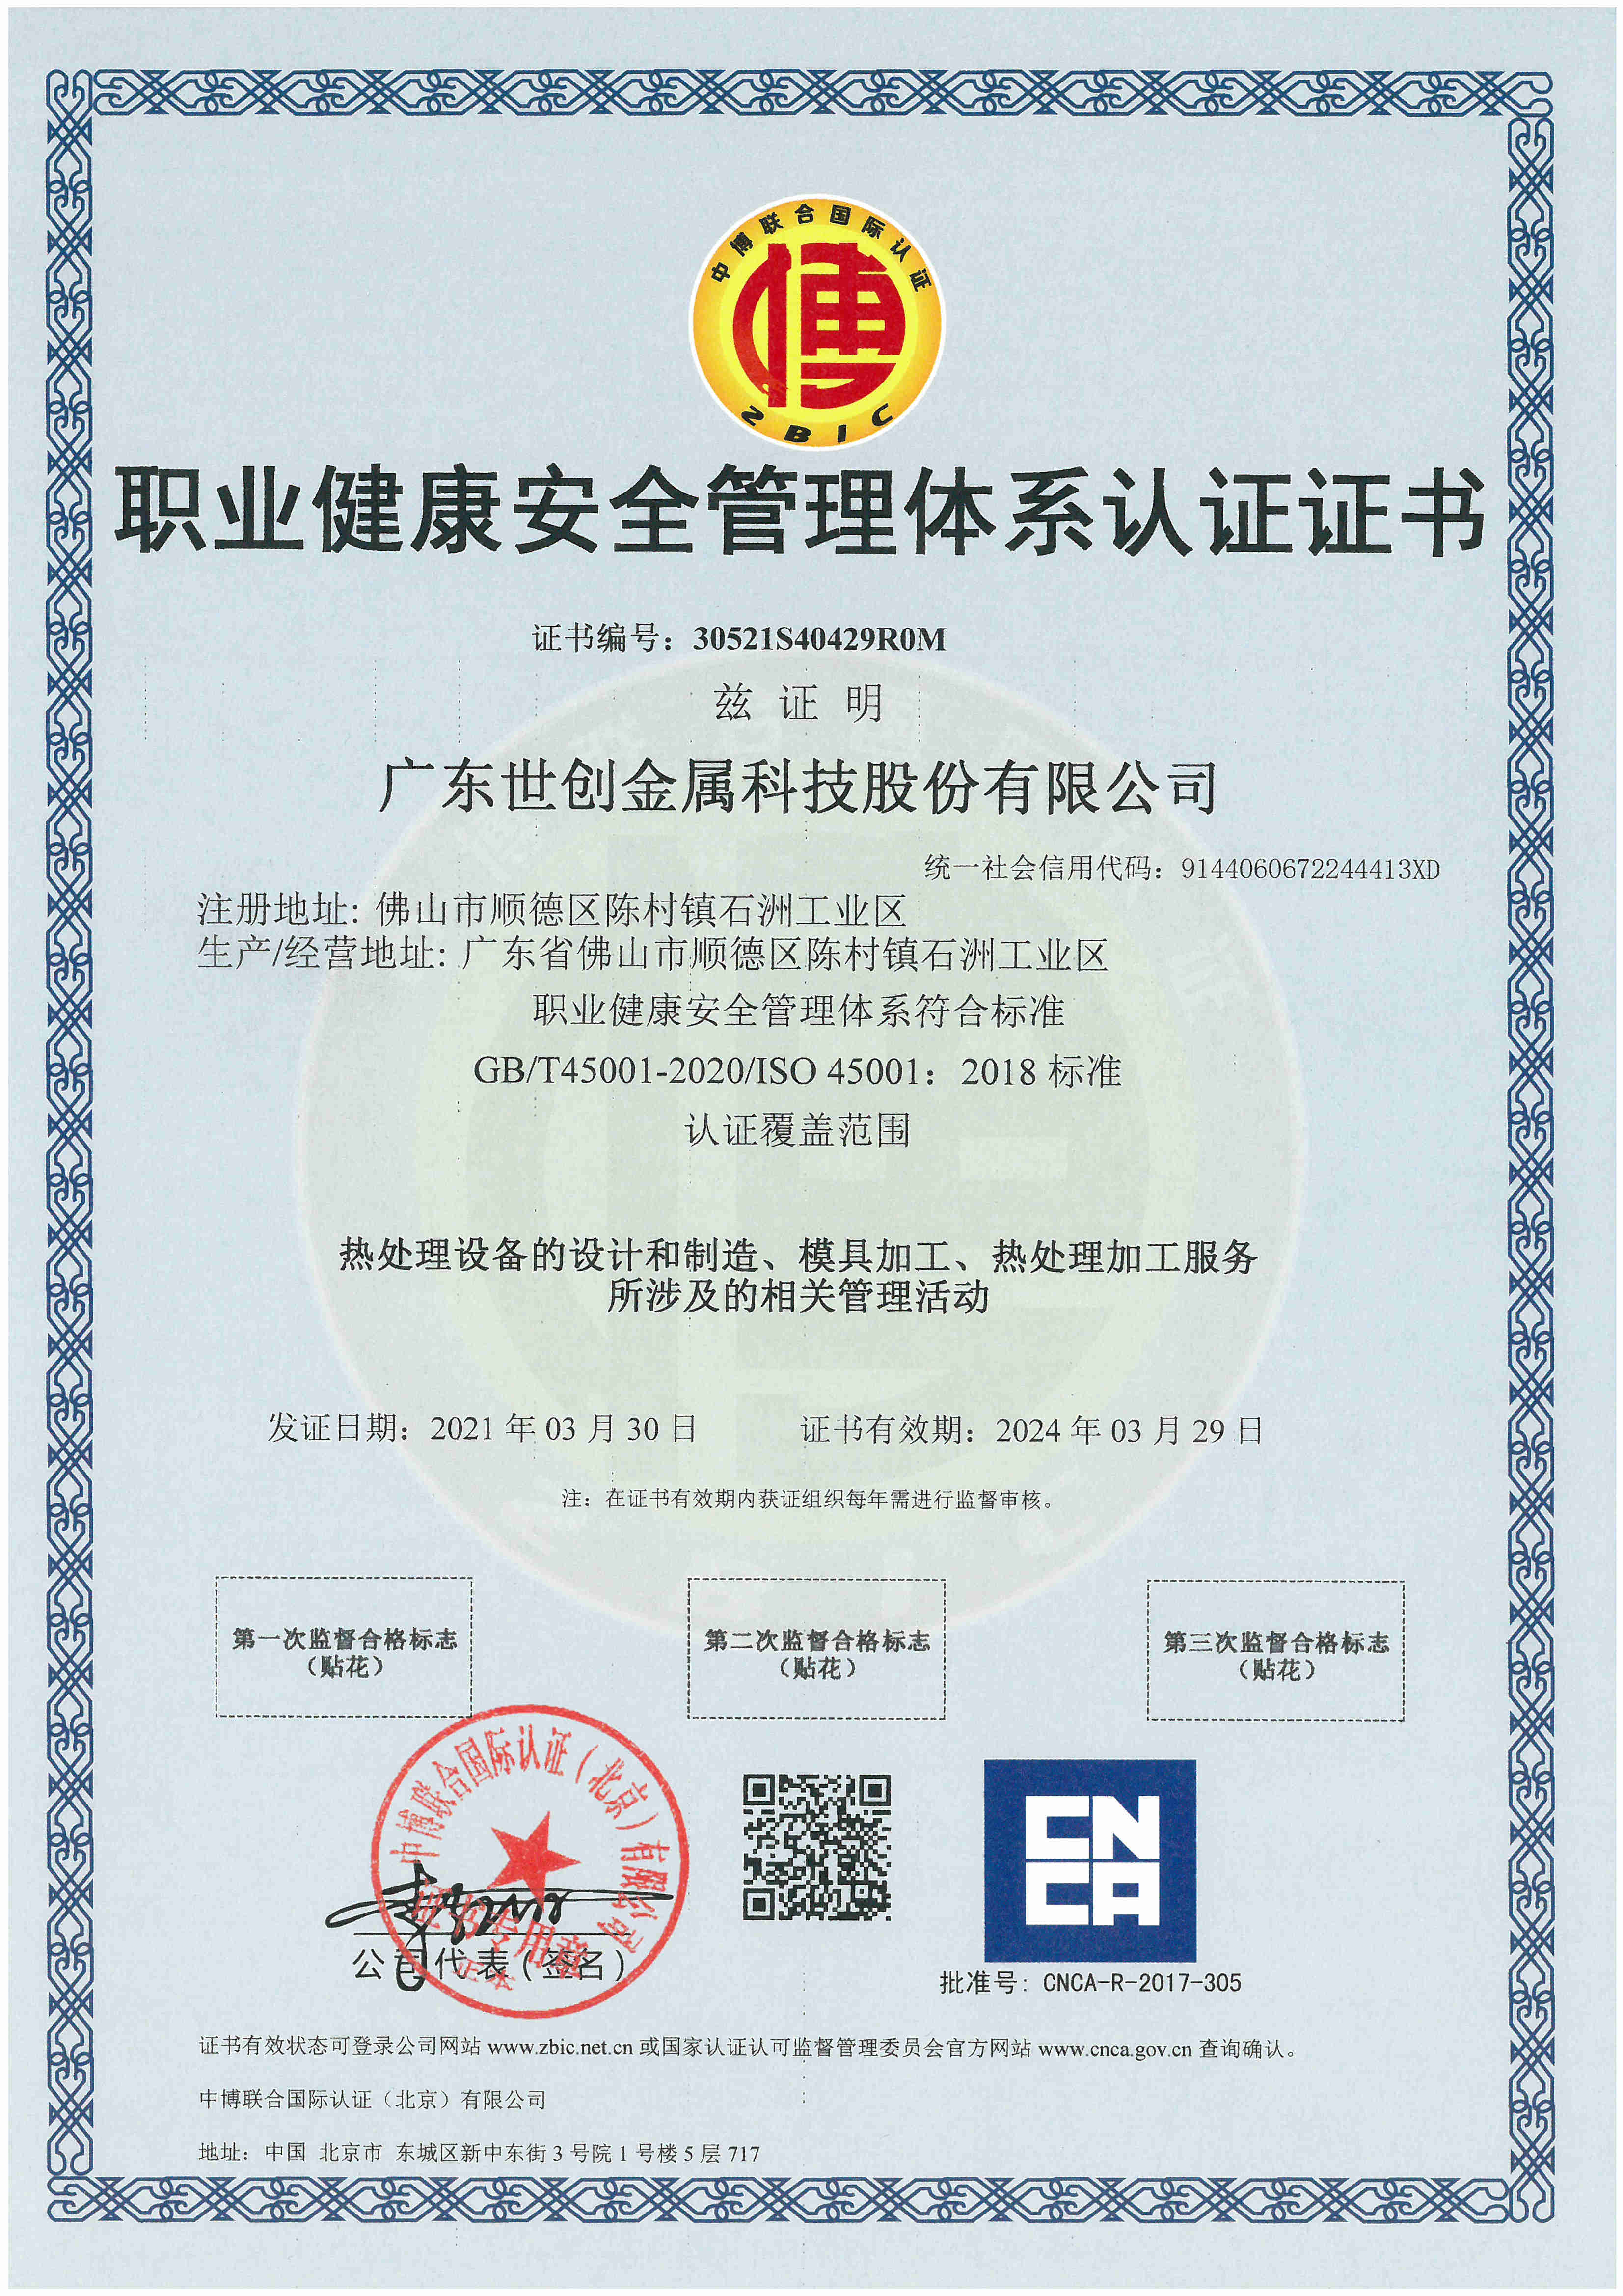 Strong Metal, CNCA tarafından ISO45001:2018 sertifikası aldı